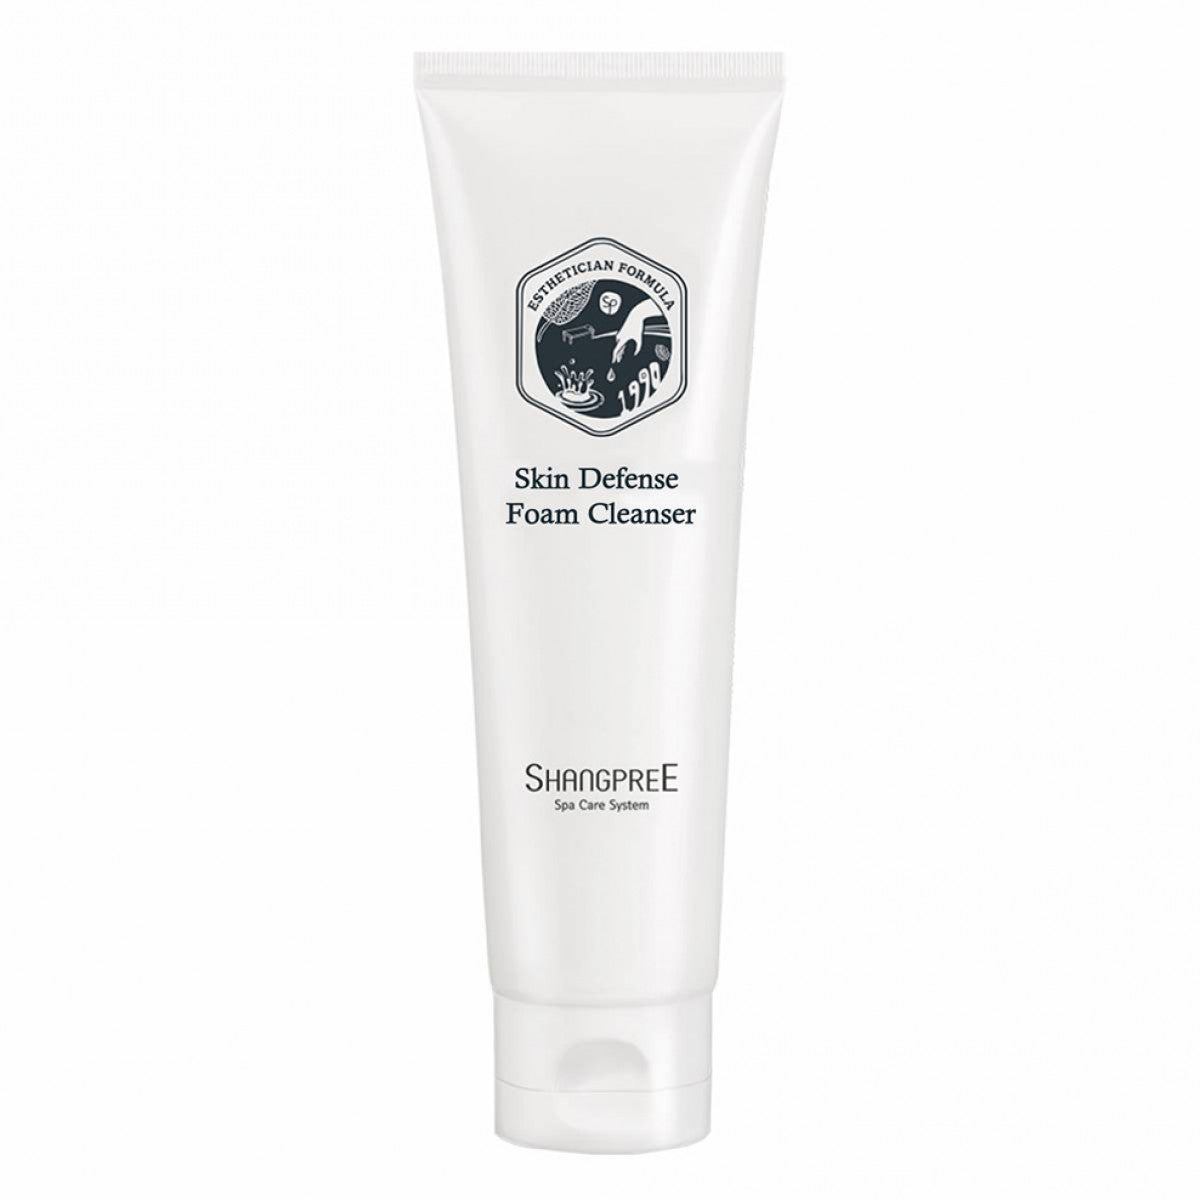 Shangpreee S-Energy Skin Defense Foam Cleanser